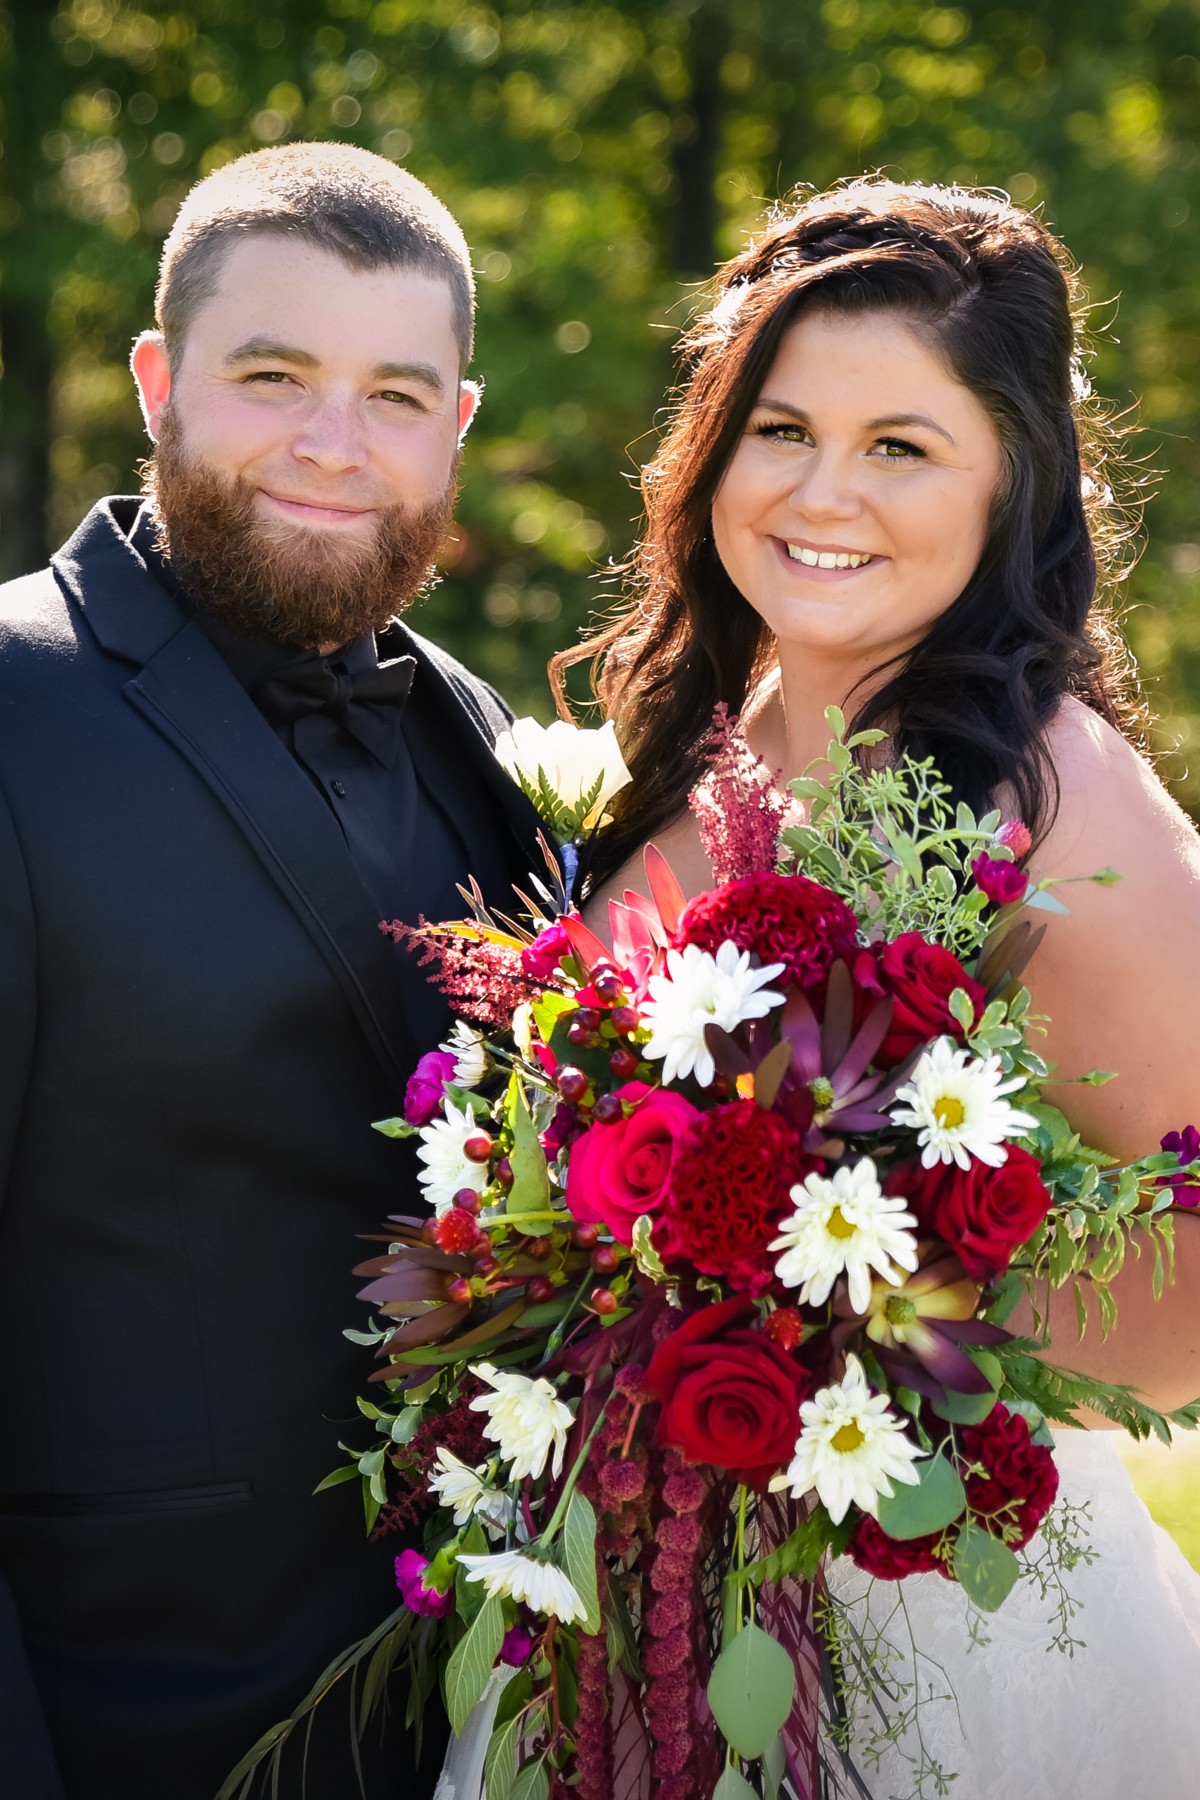 New Hampshire Wedding - Portfolio: Engagements / Weddings